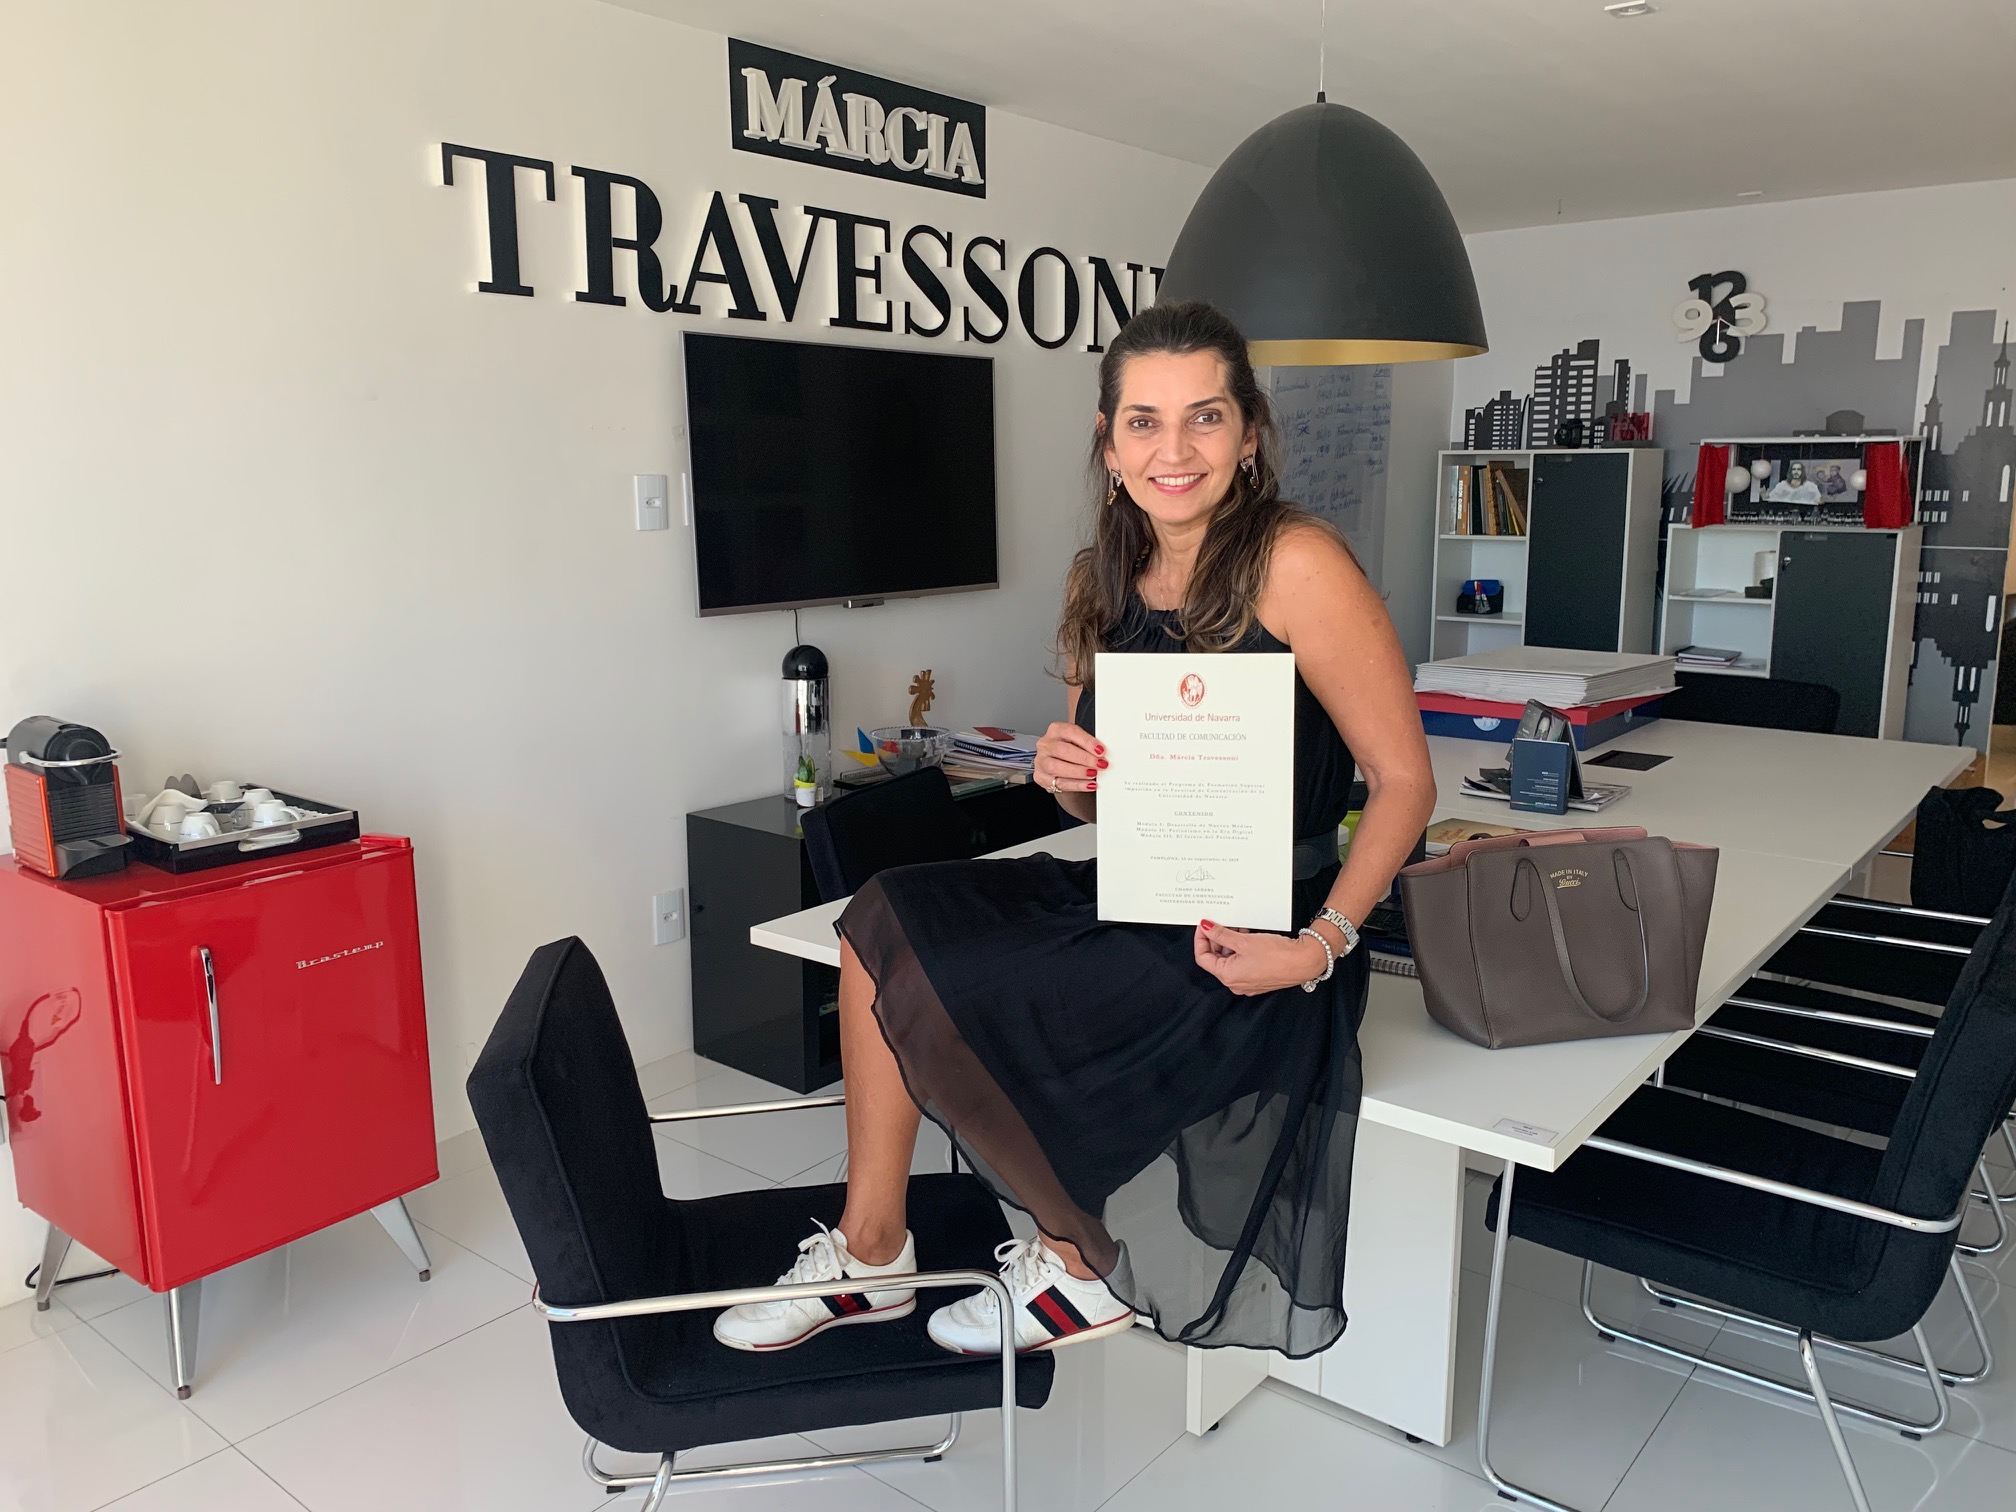 Márcia Travessoni recebe diploma de master em Jornalismo pela ISE Business School